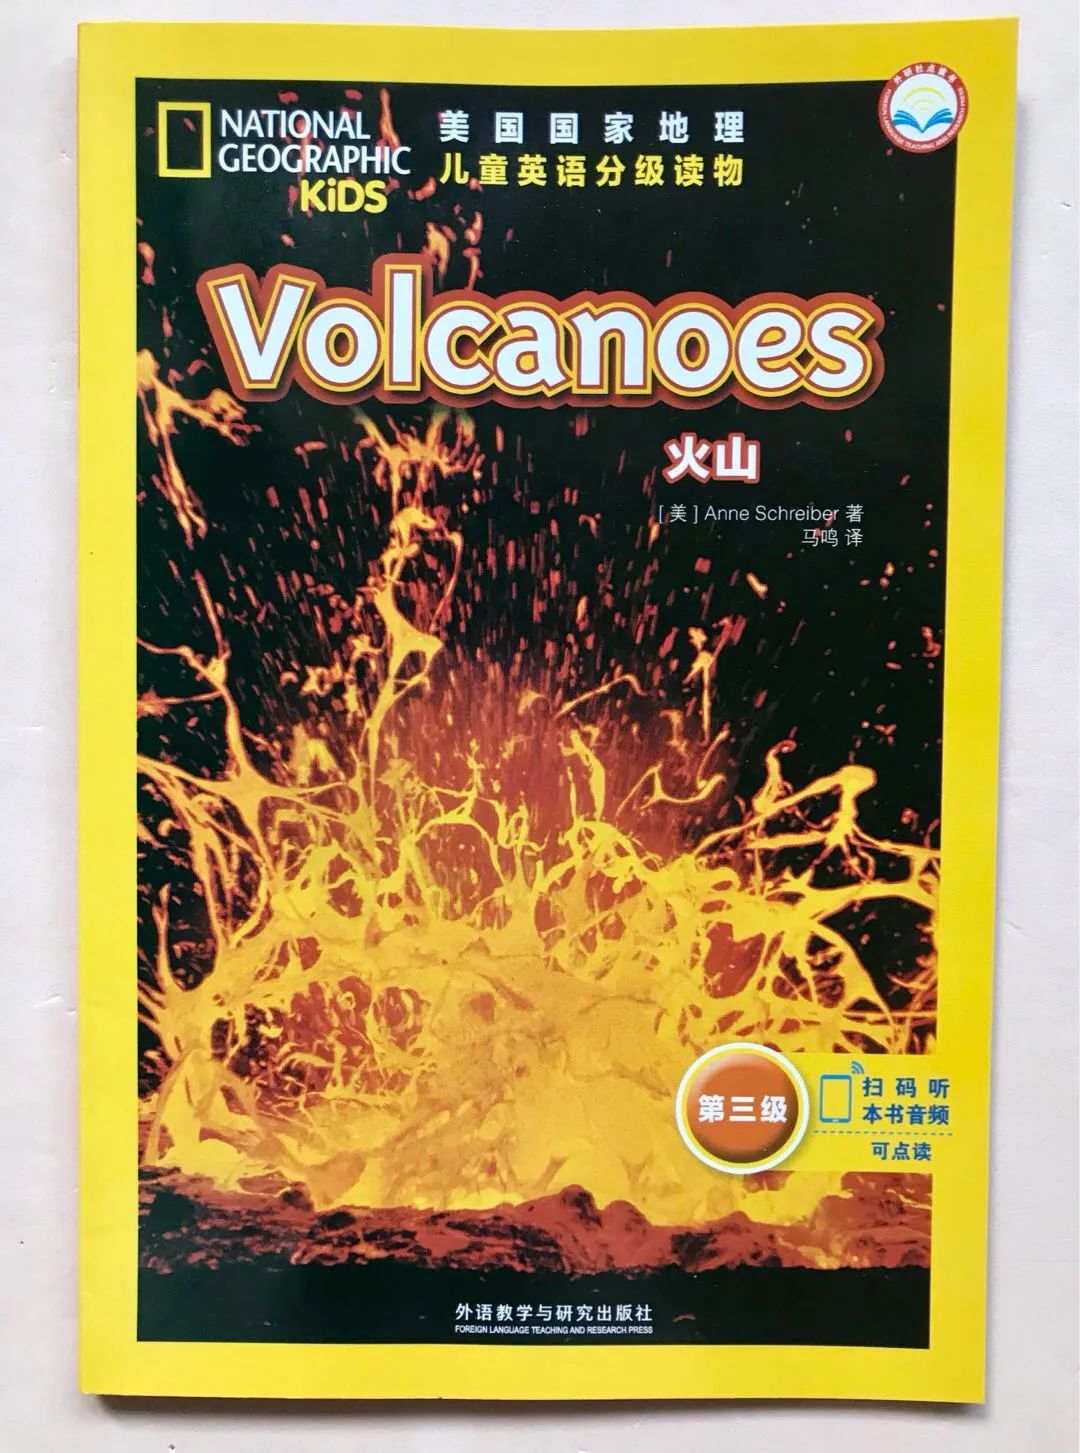 #阅读的乐趣远不止泛读# 最近我们开始玩的主题式阅读—火山